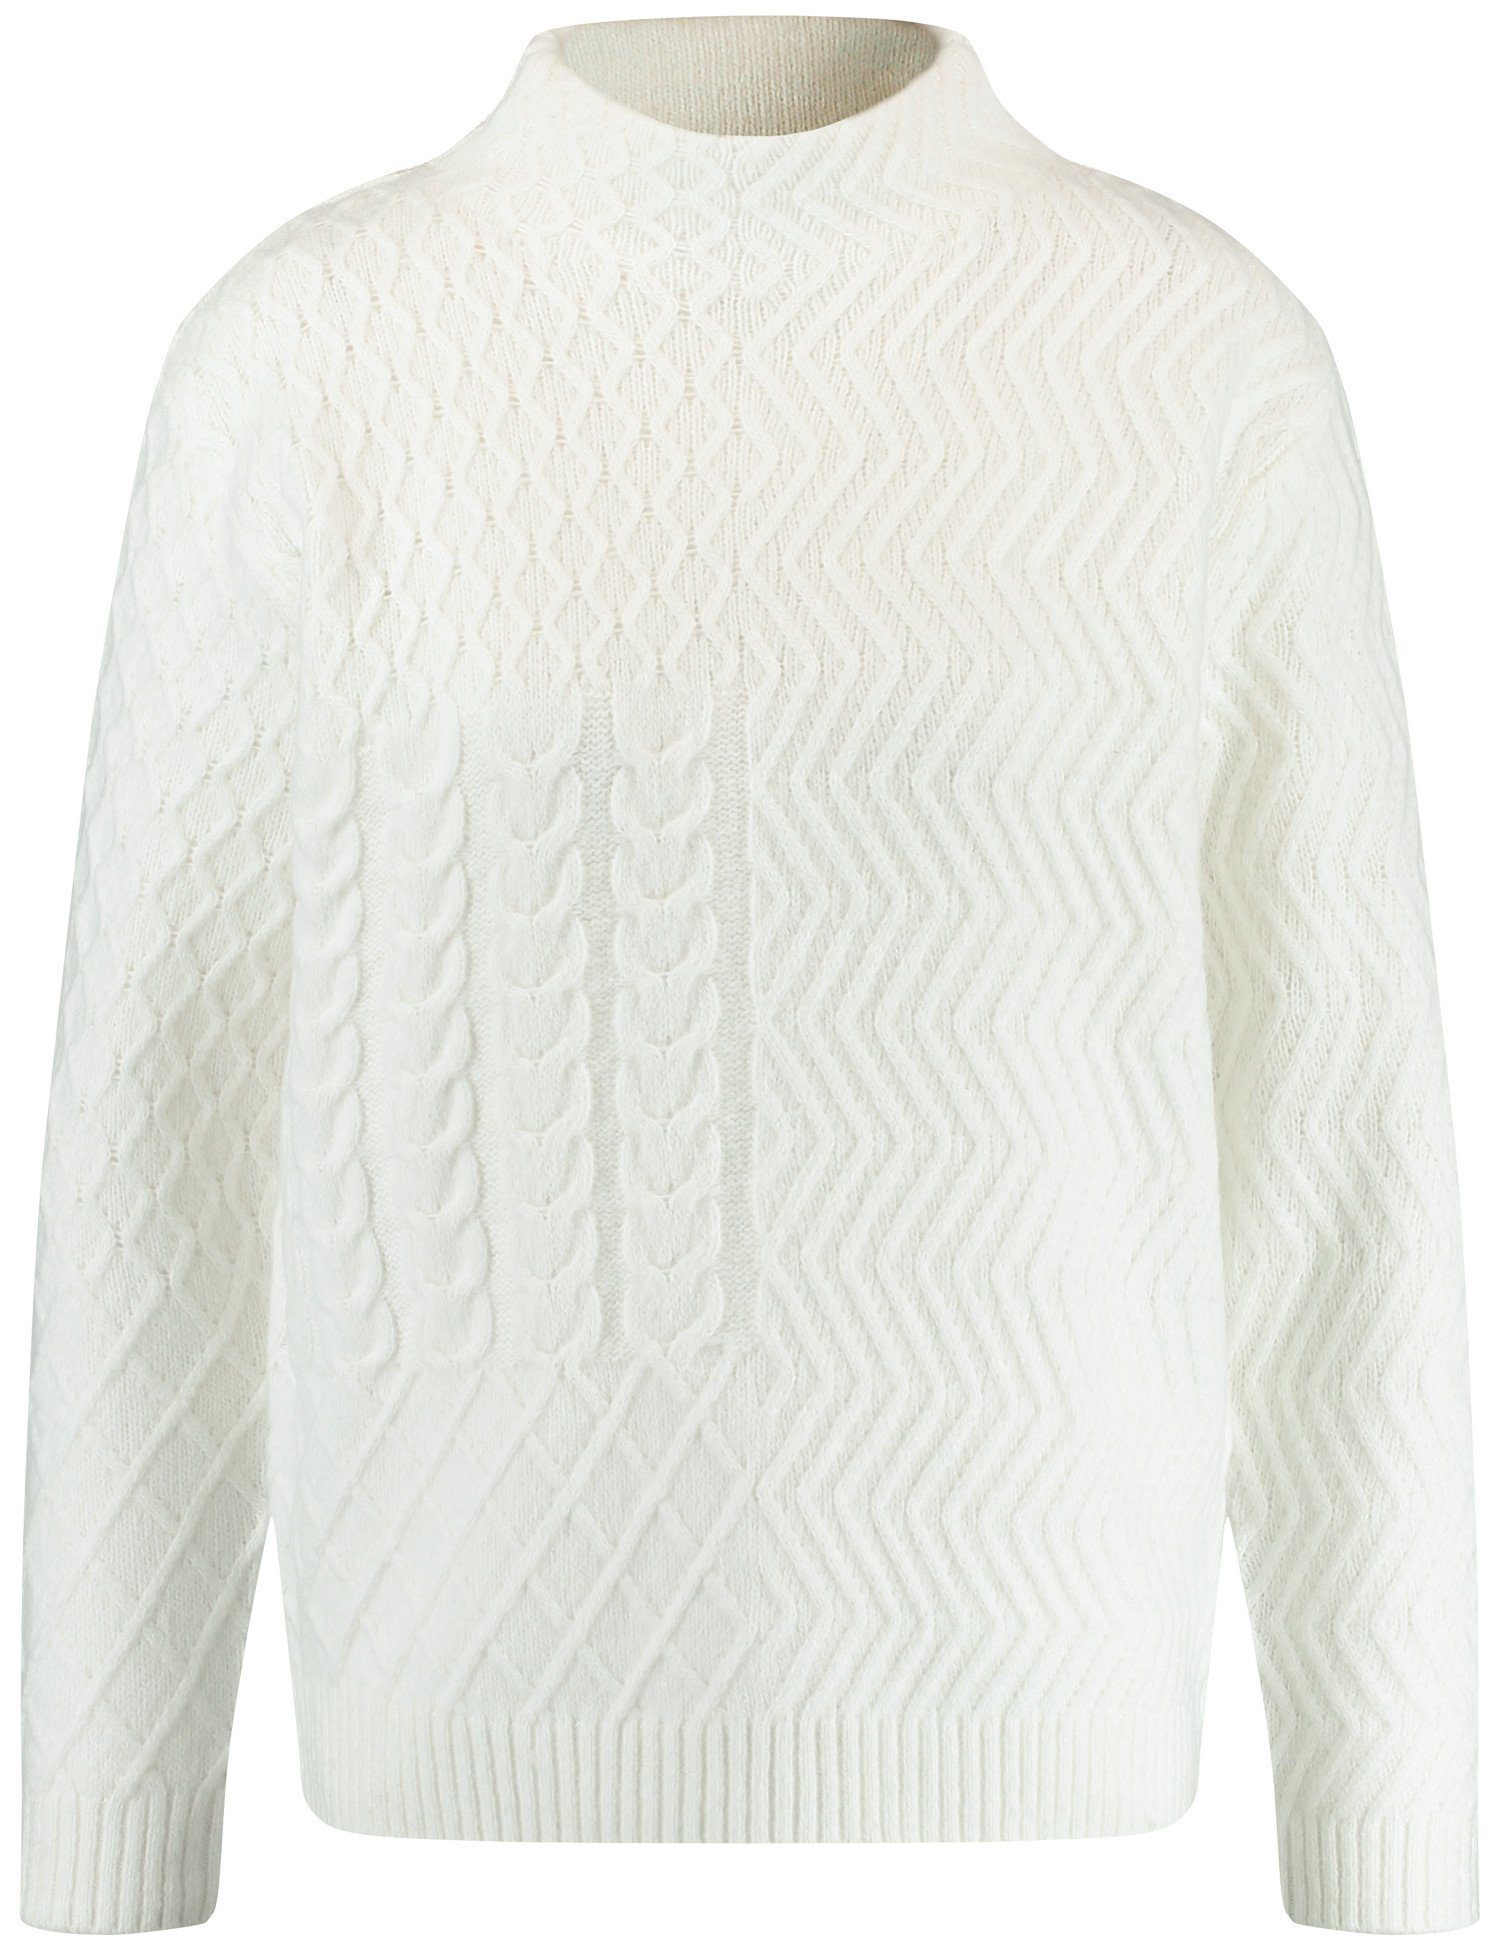 GERRY WEBER Rundhalspullover Pullover Turtleneck Strick-Muster mit Off-white und